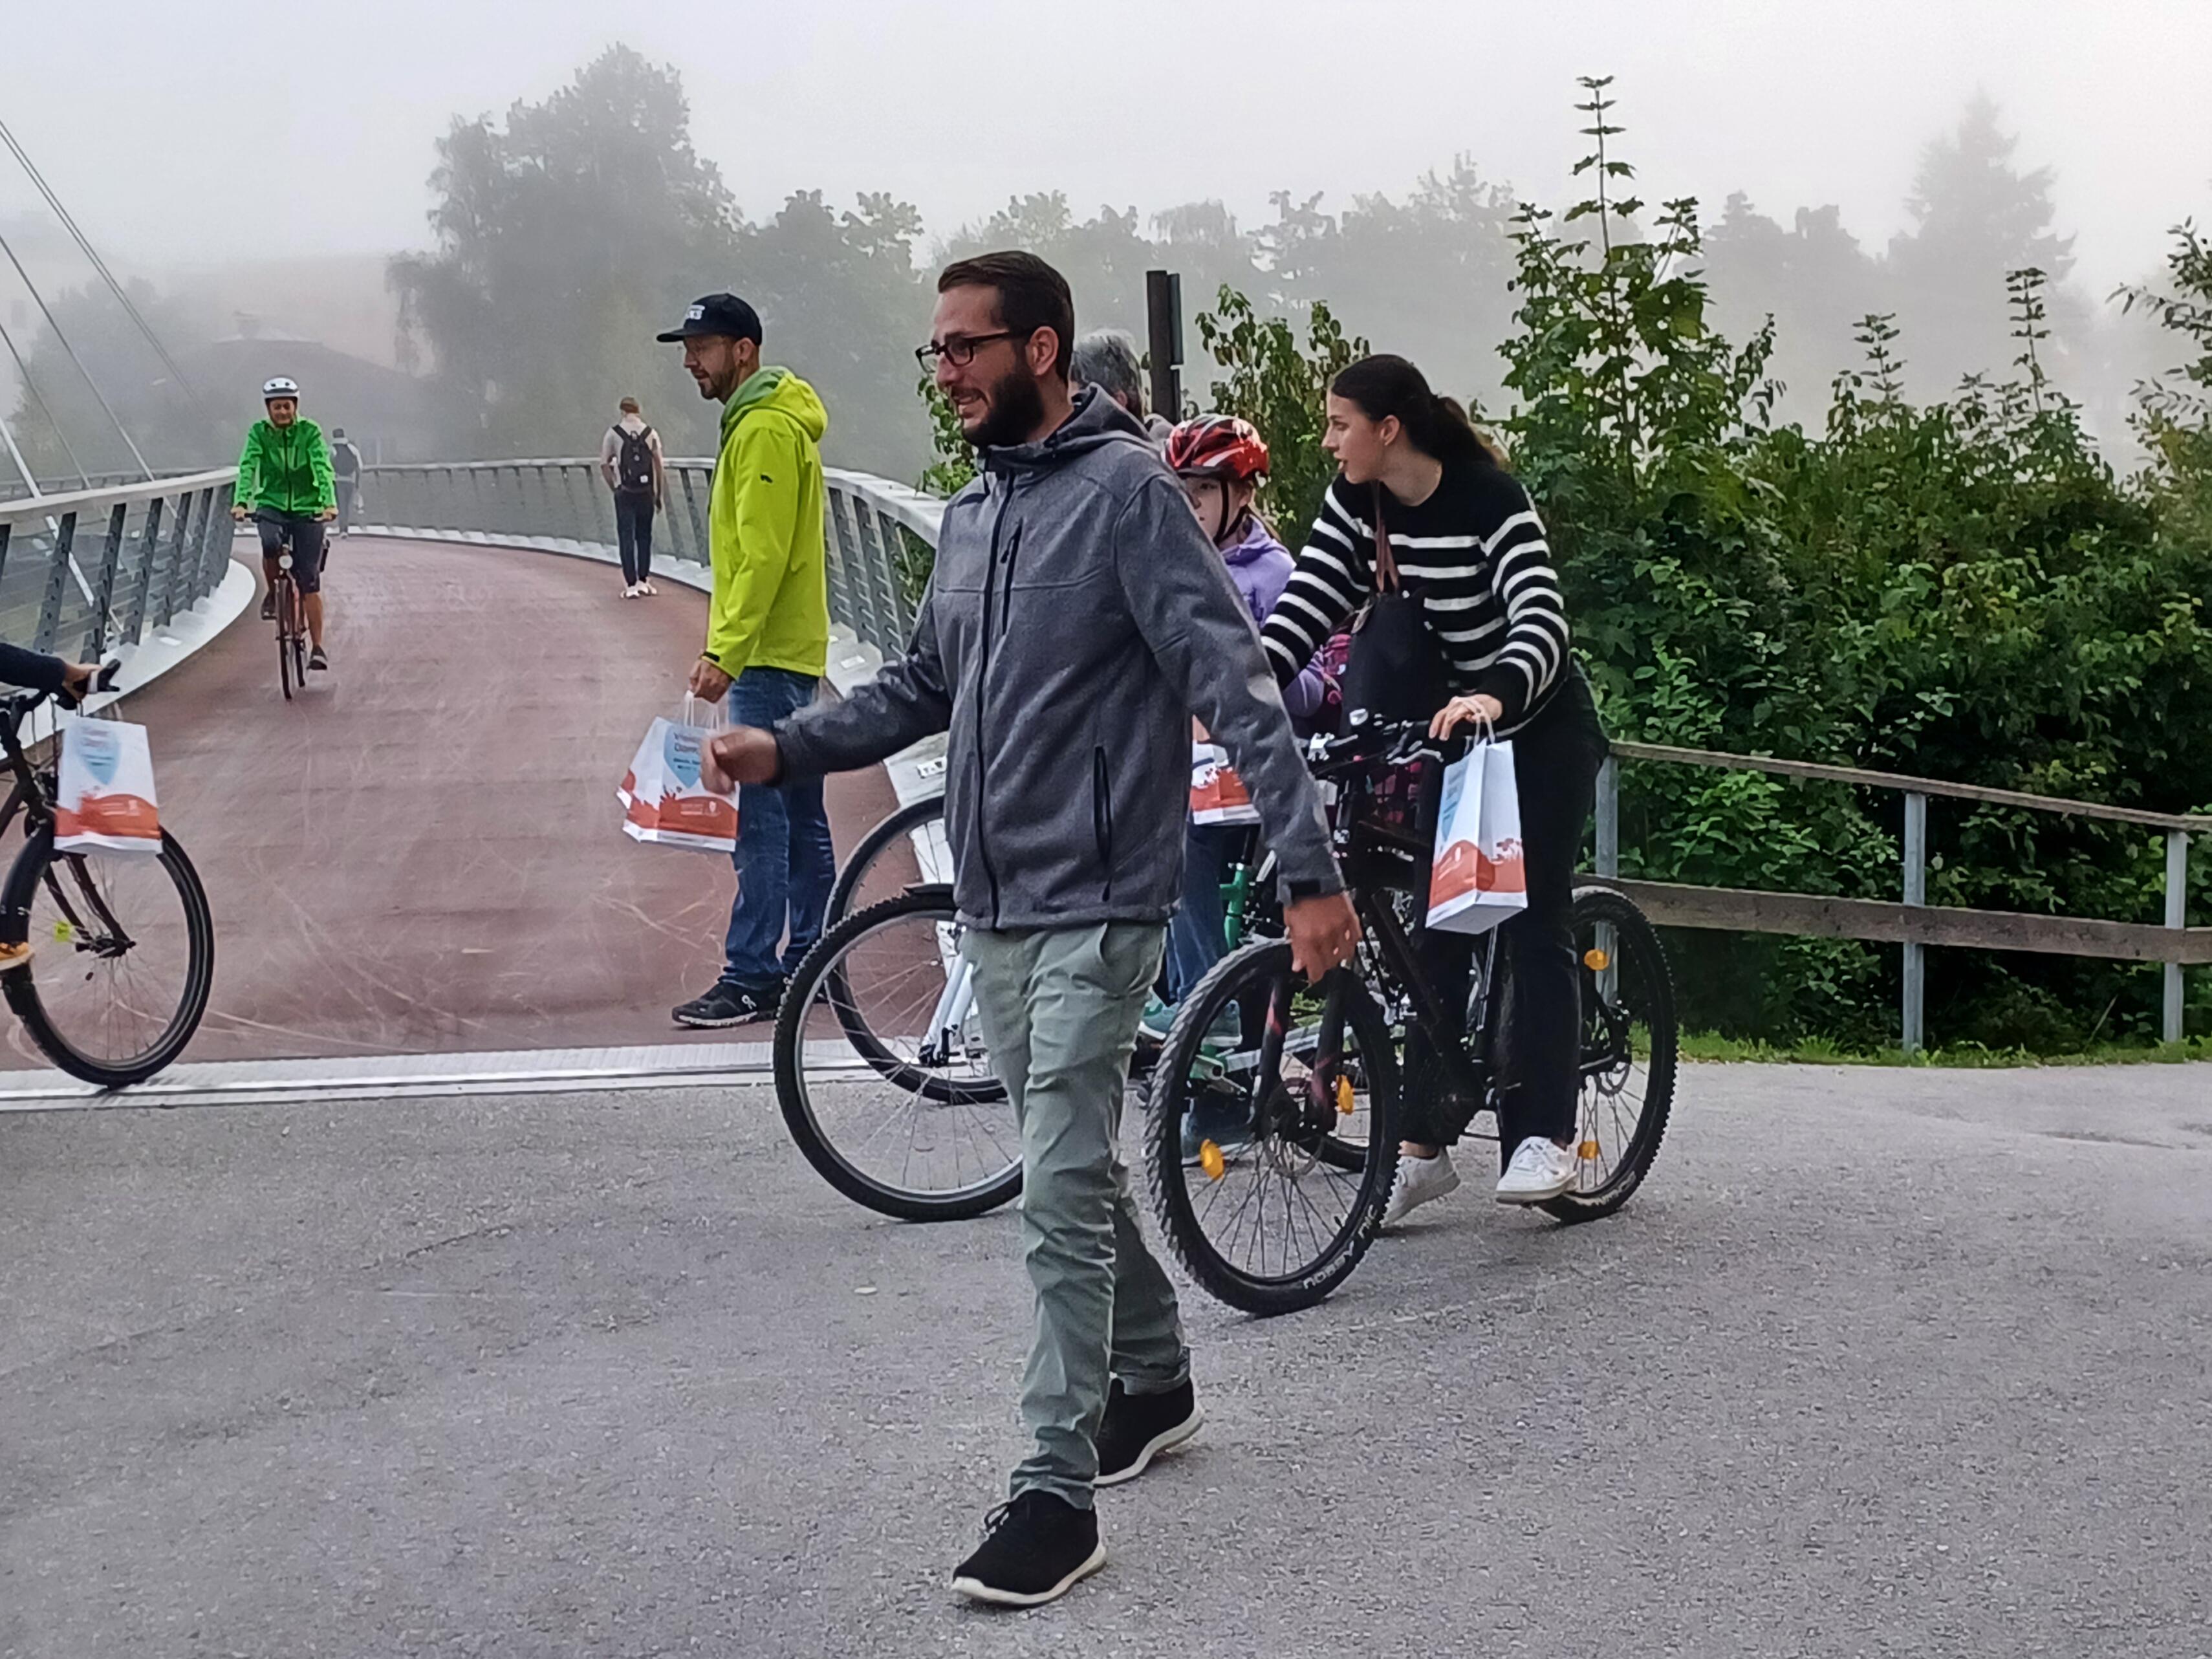 Fahrradfahrer bei einer Brücke mit Danke-Sackerl